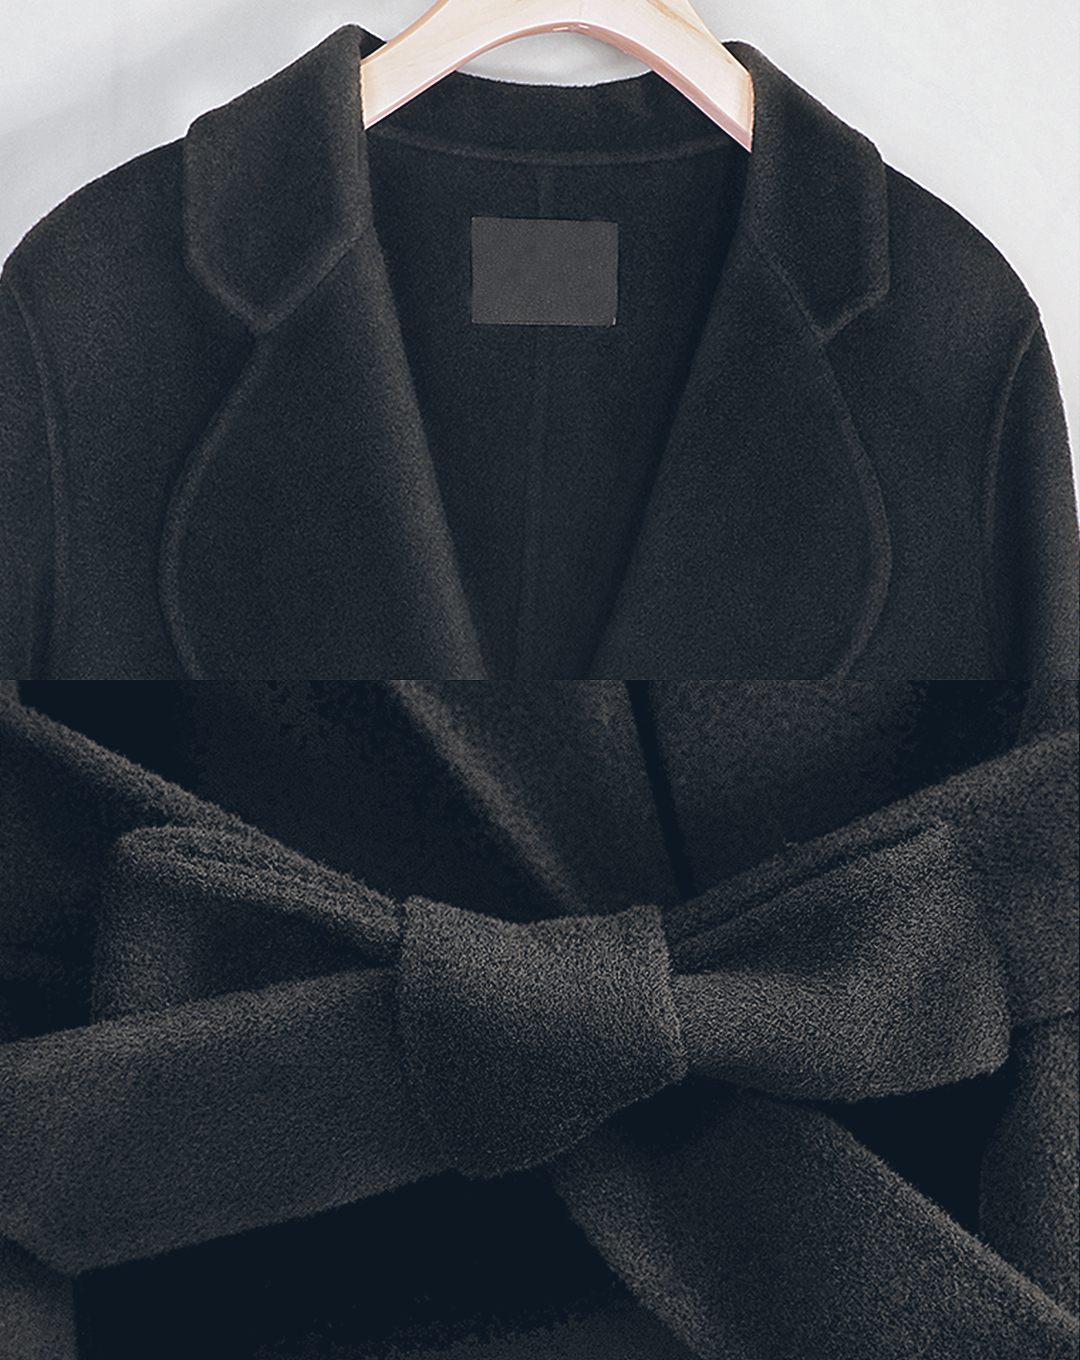 ♀Cashmere Blend Long Coat